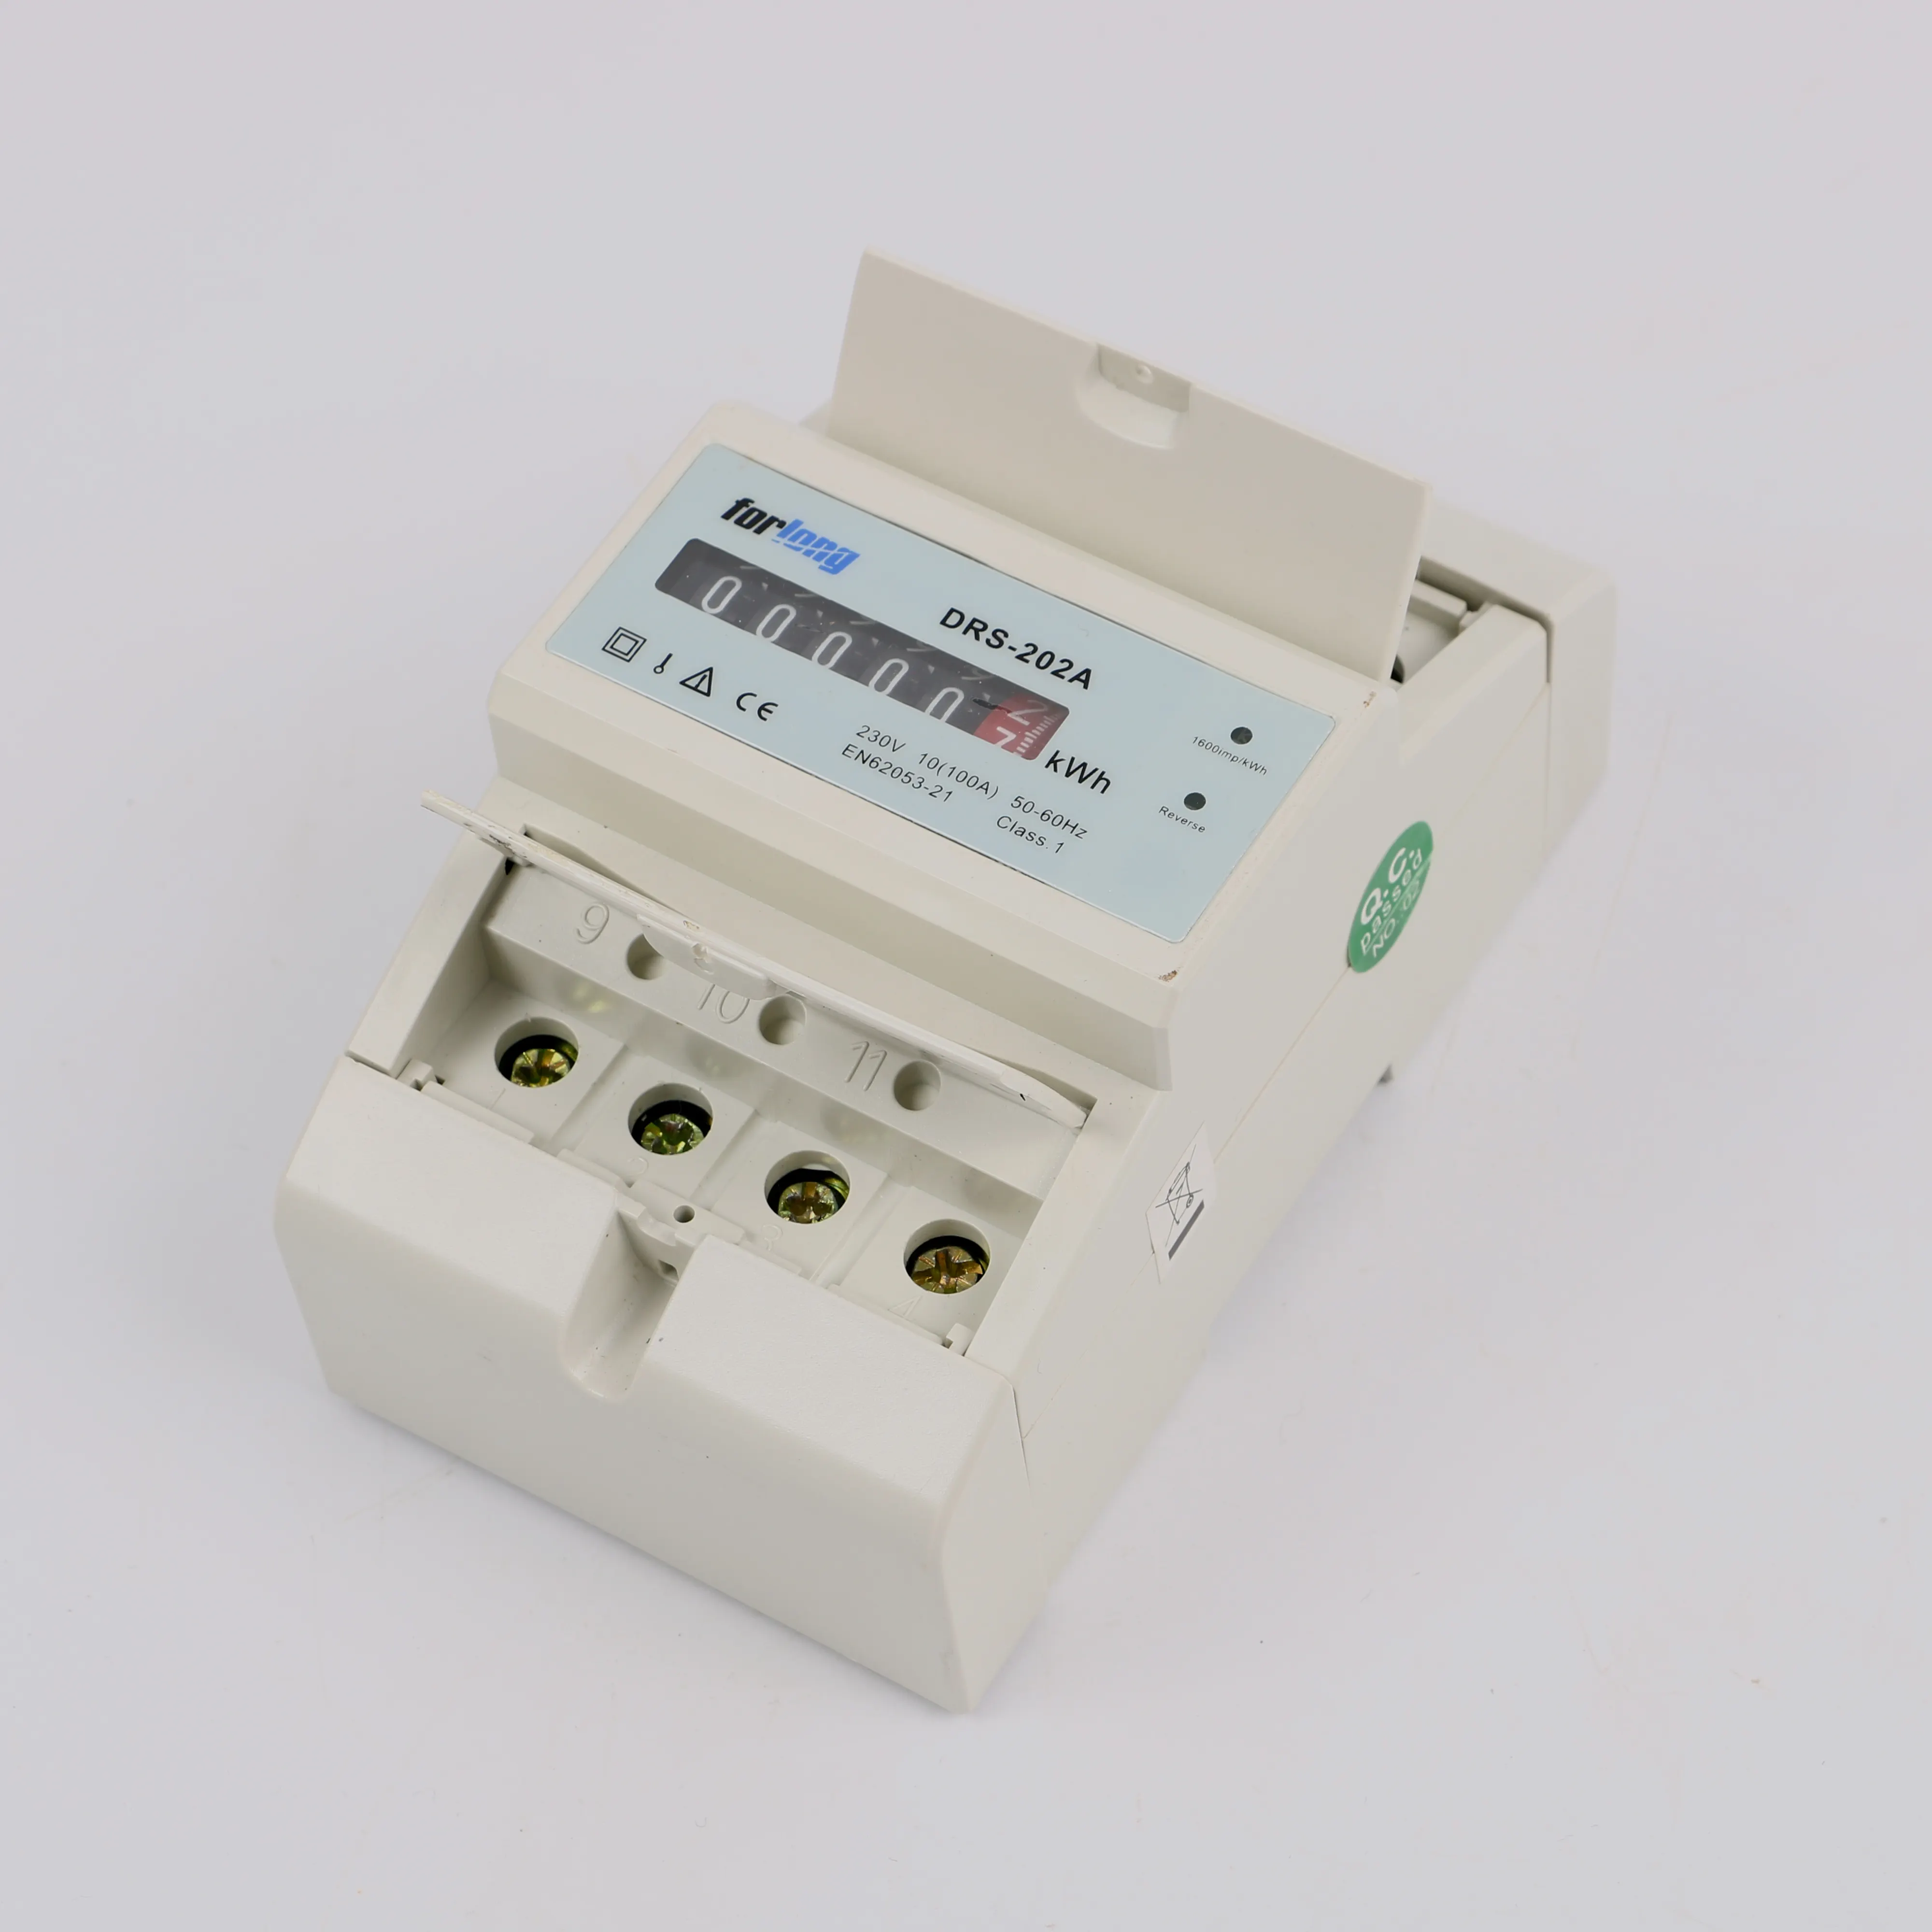 A basso consumo di impulsi di uscita monofase risparmio contatore elettrico mini kwh meter